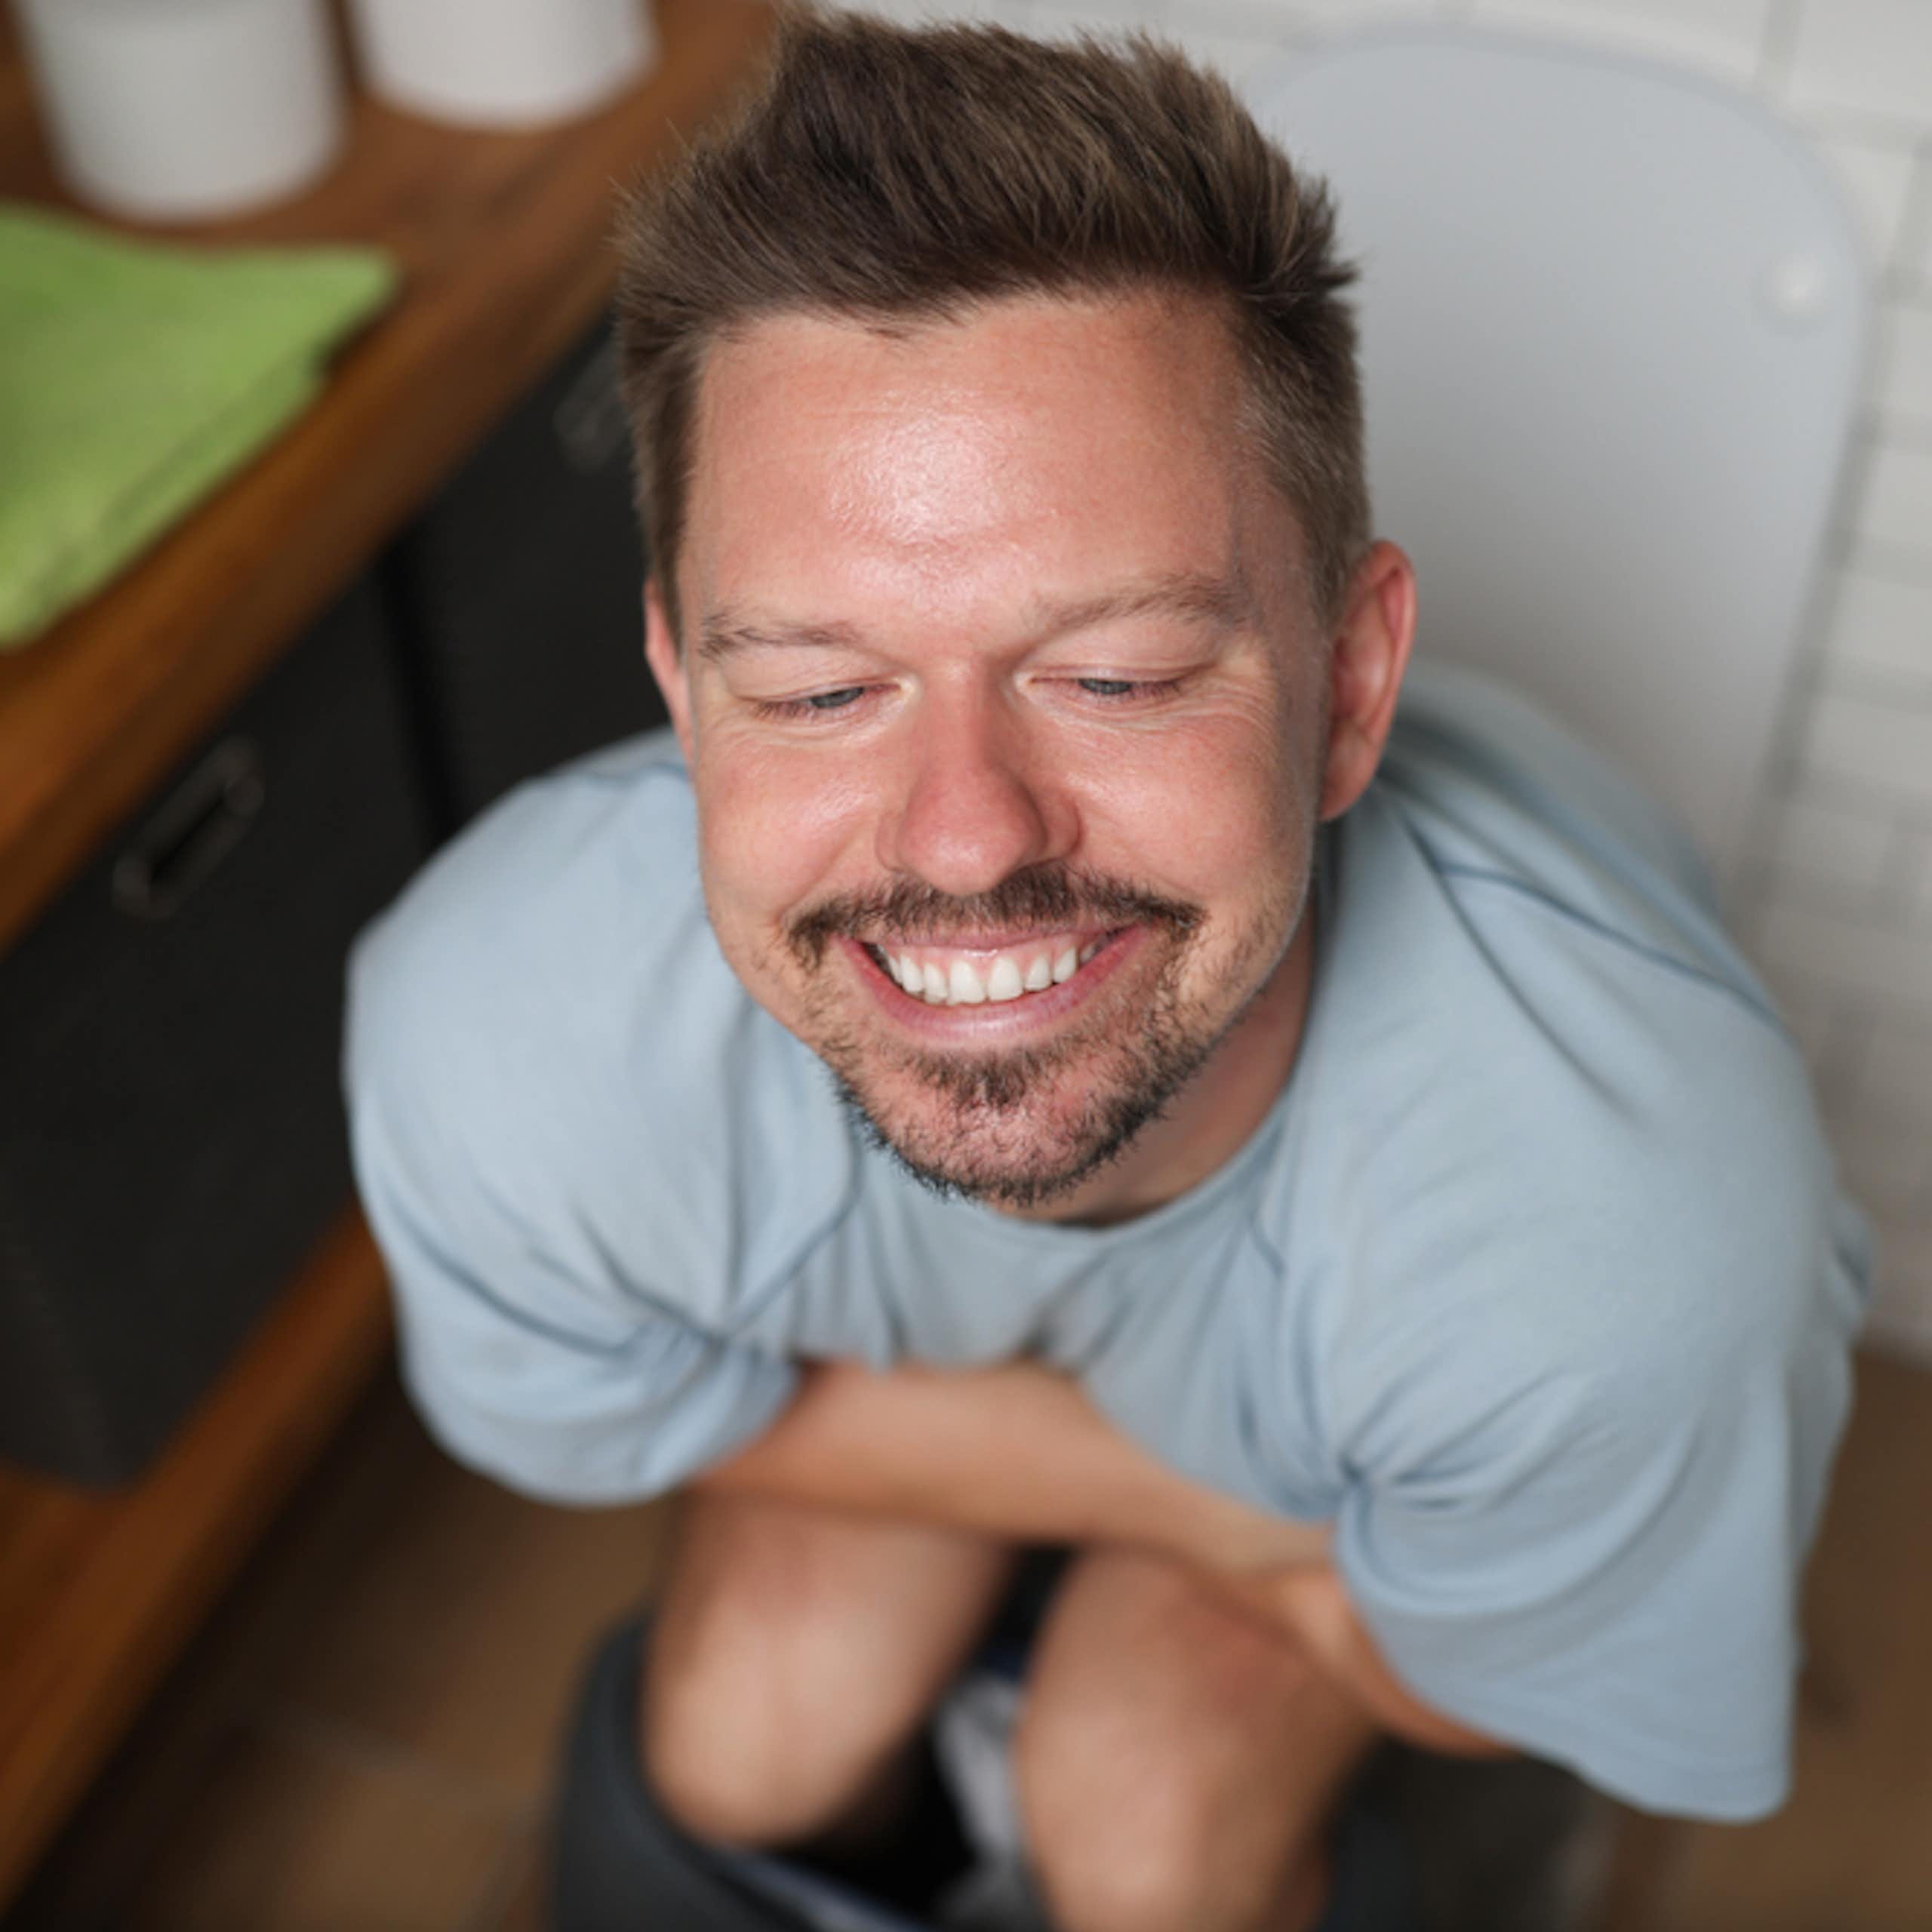 Smiling man sitting on toilet